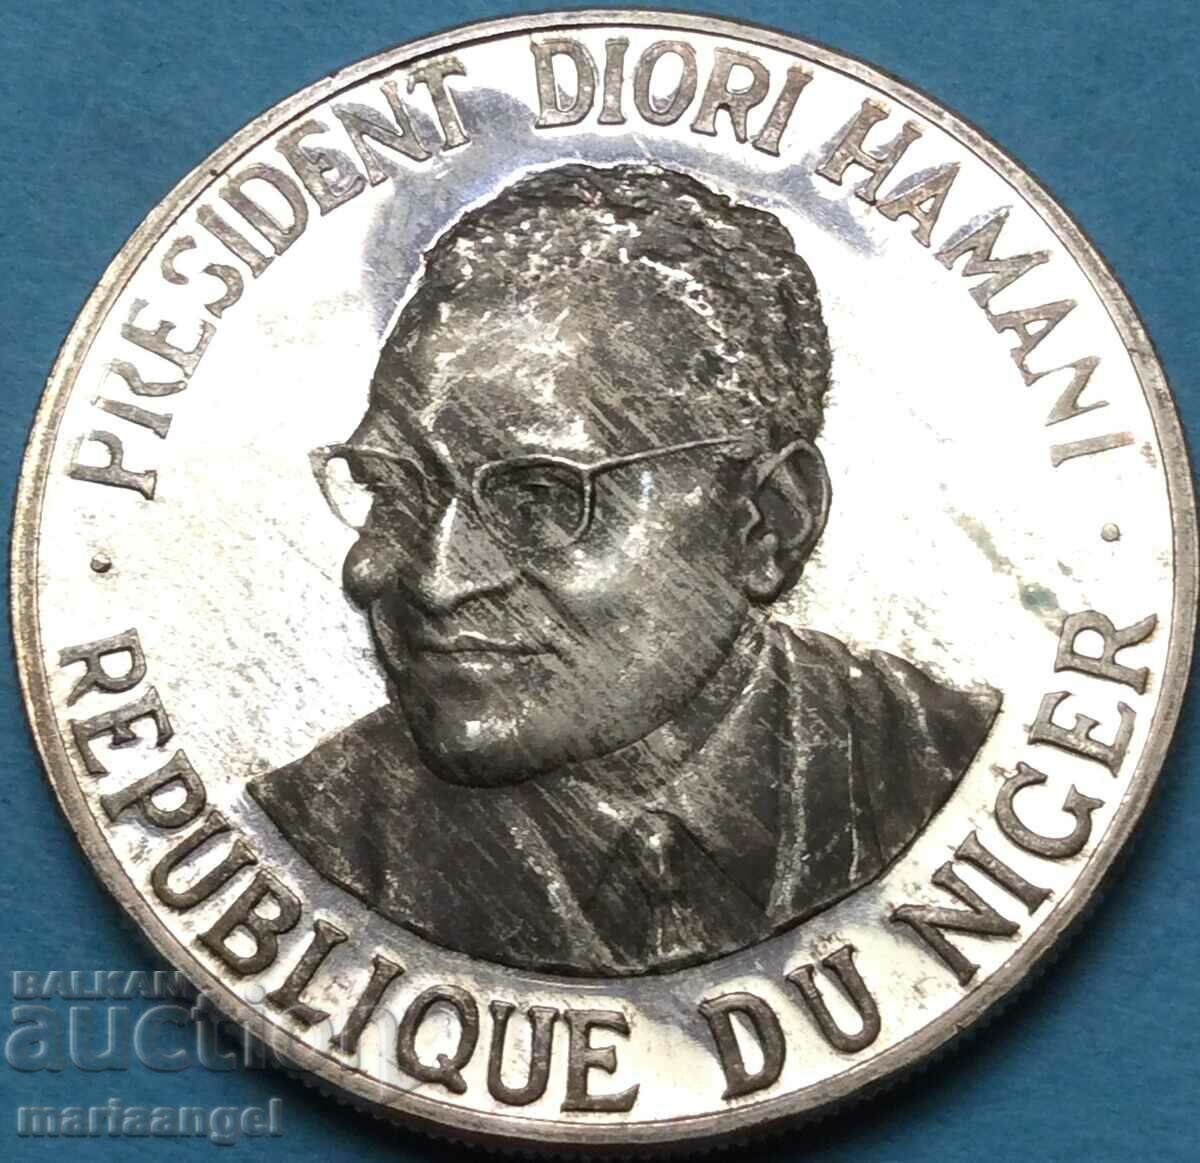 Niger 1000 francs 1960 Independence 19.97g silver